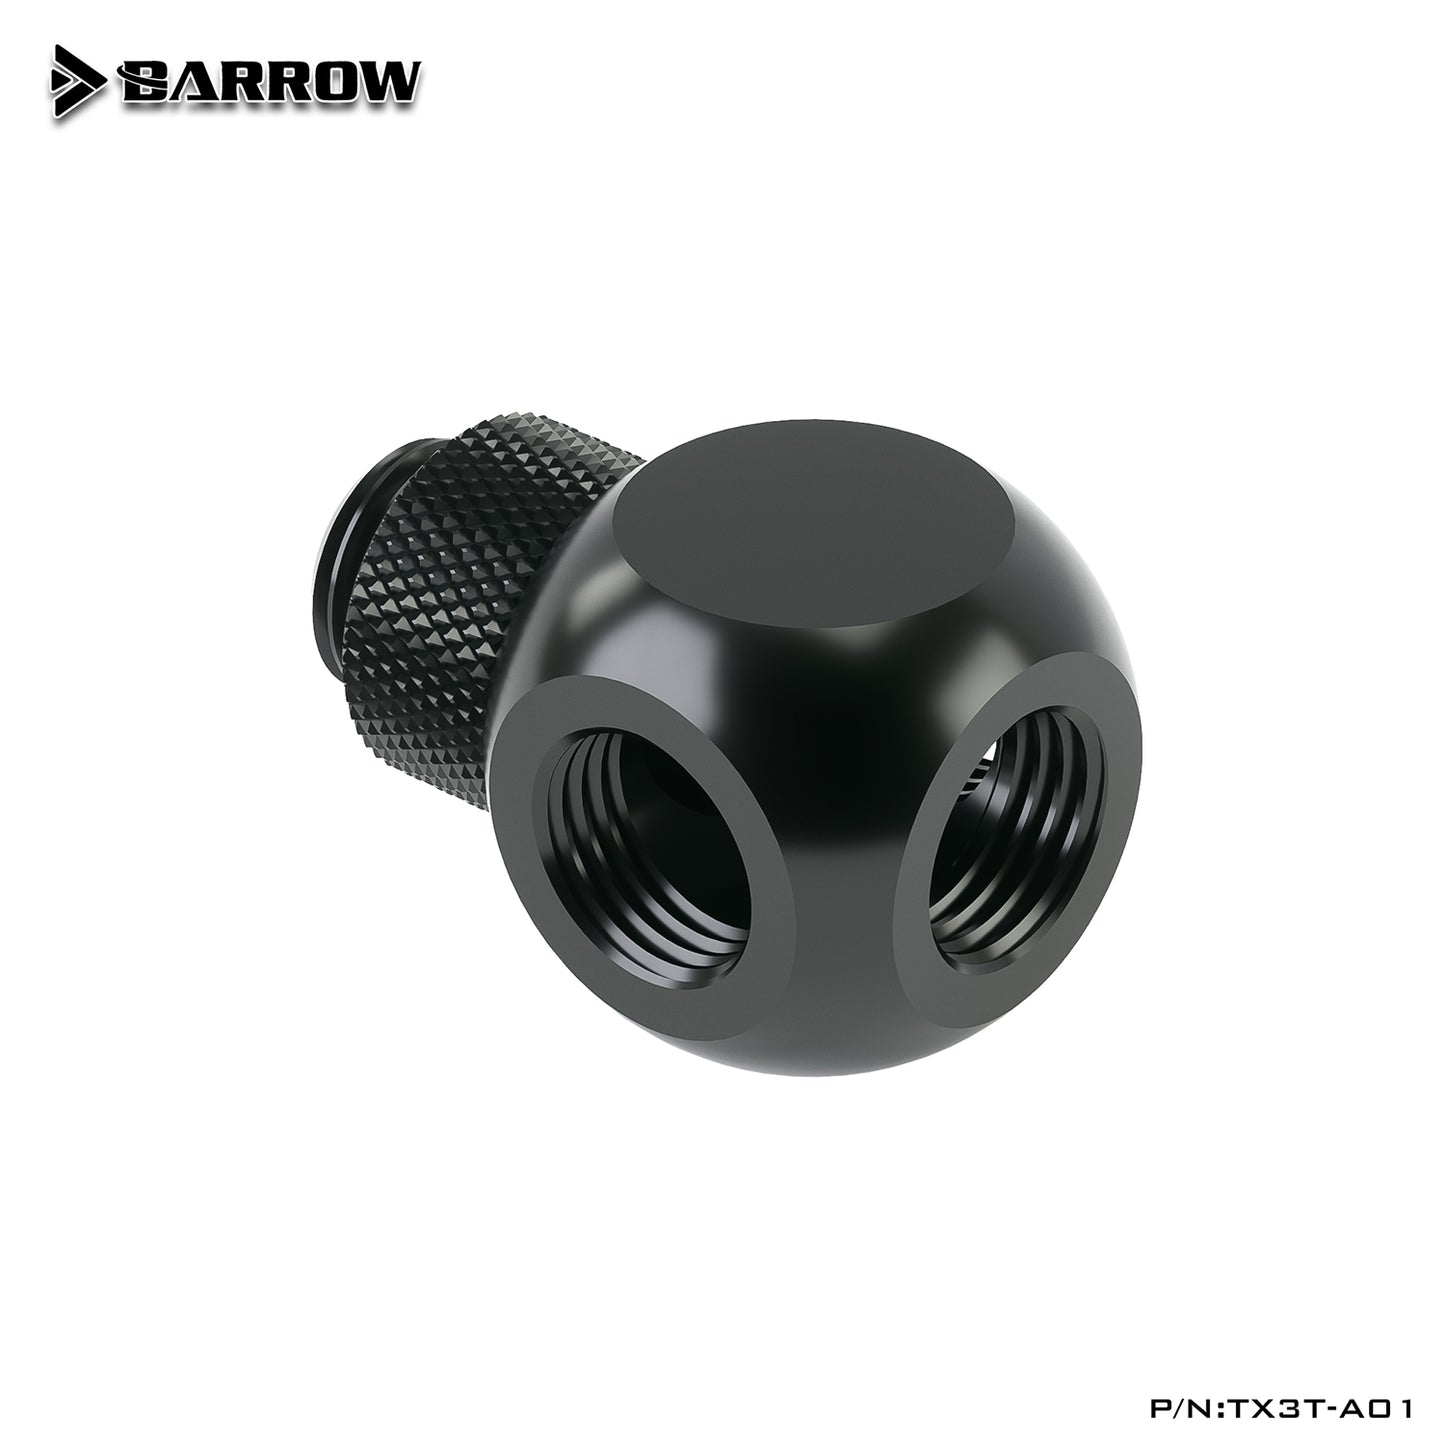 Barrow TX4T-A01 G1/4 "X4 noir argent Extender rotation 4 voies adaptateur cubique siège refroidissement par eau accessoires informatiques